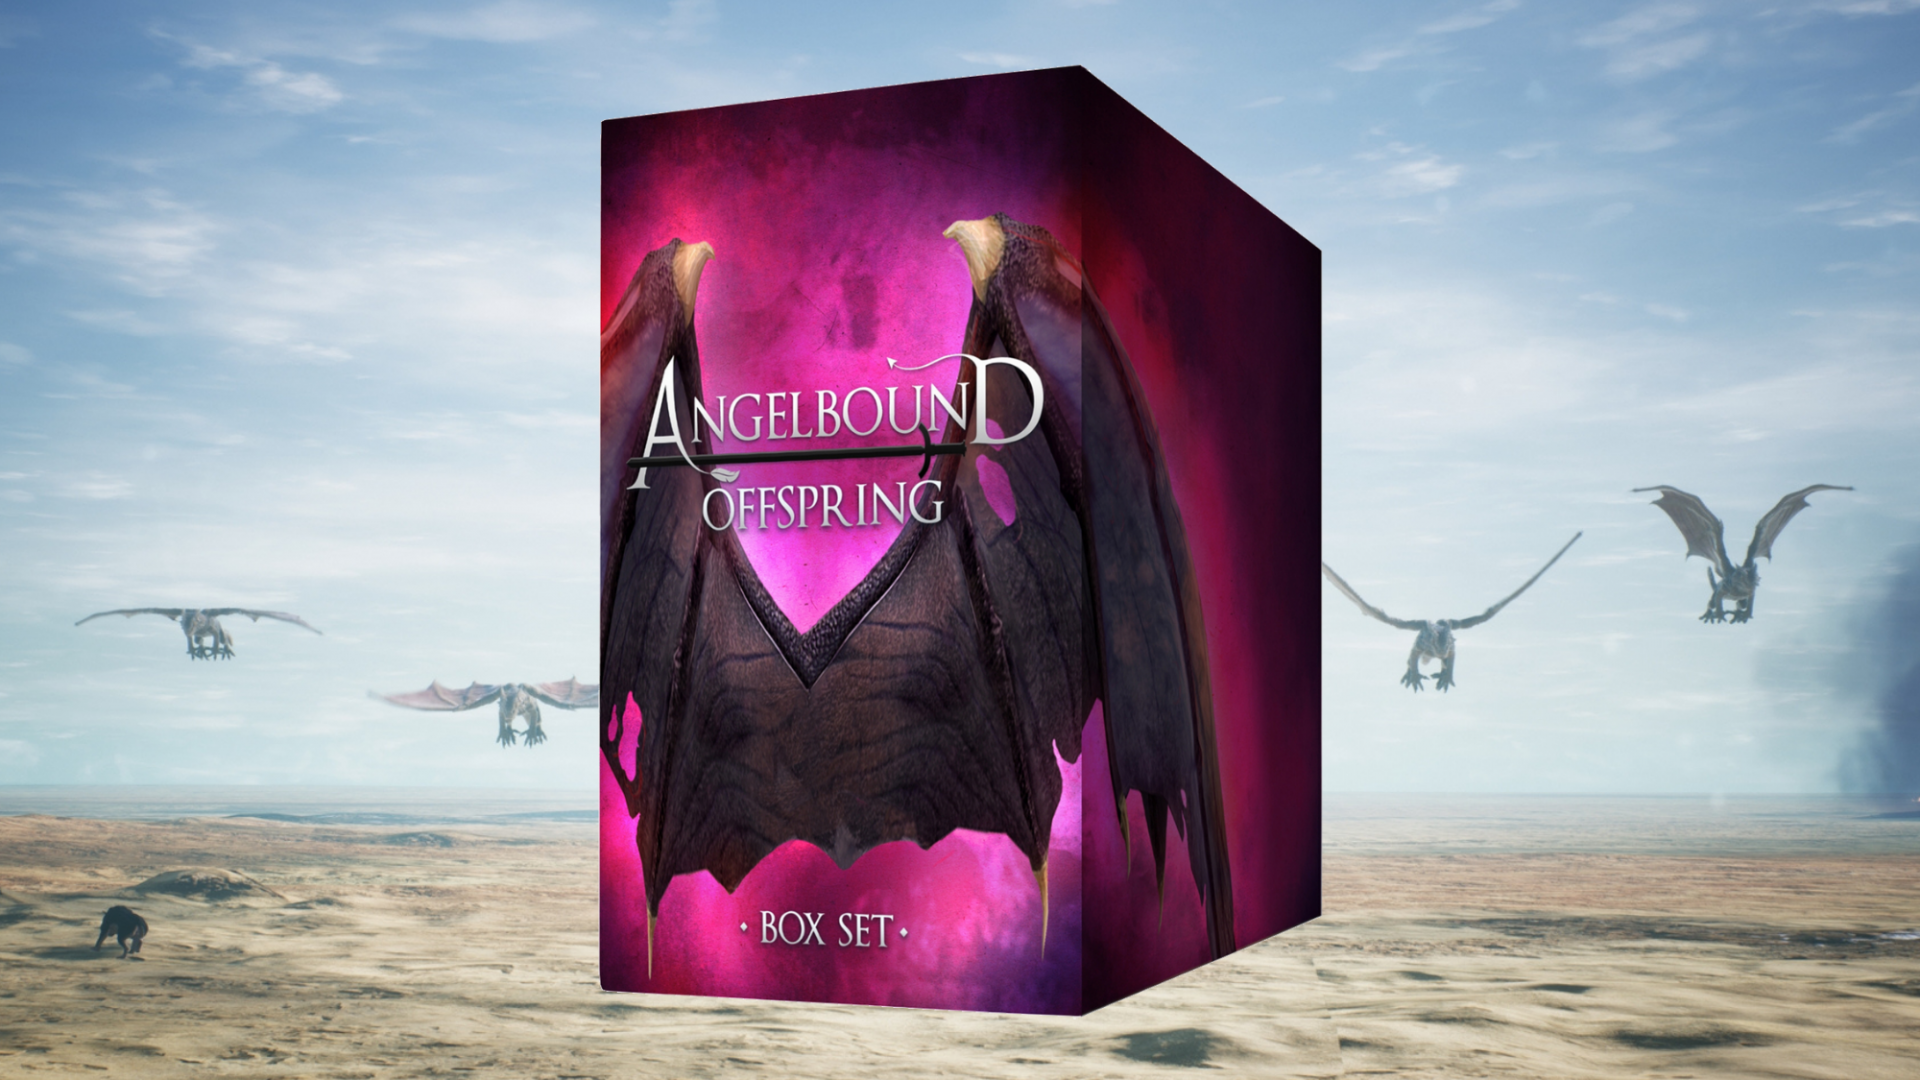 Only $1.99 - Angelbound Offspring Box Set